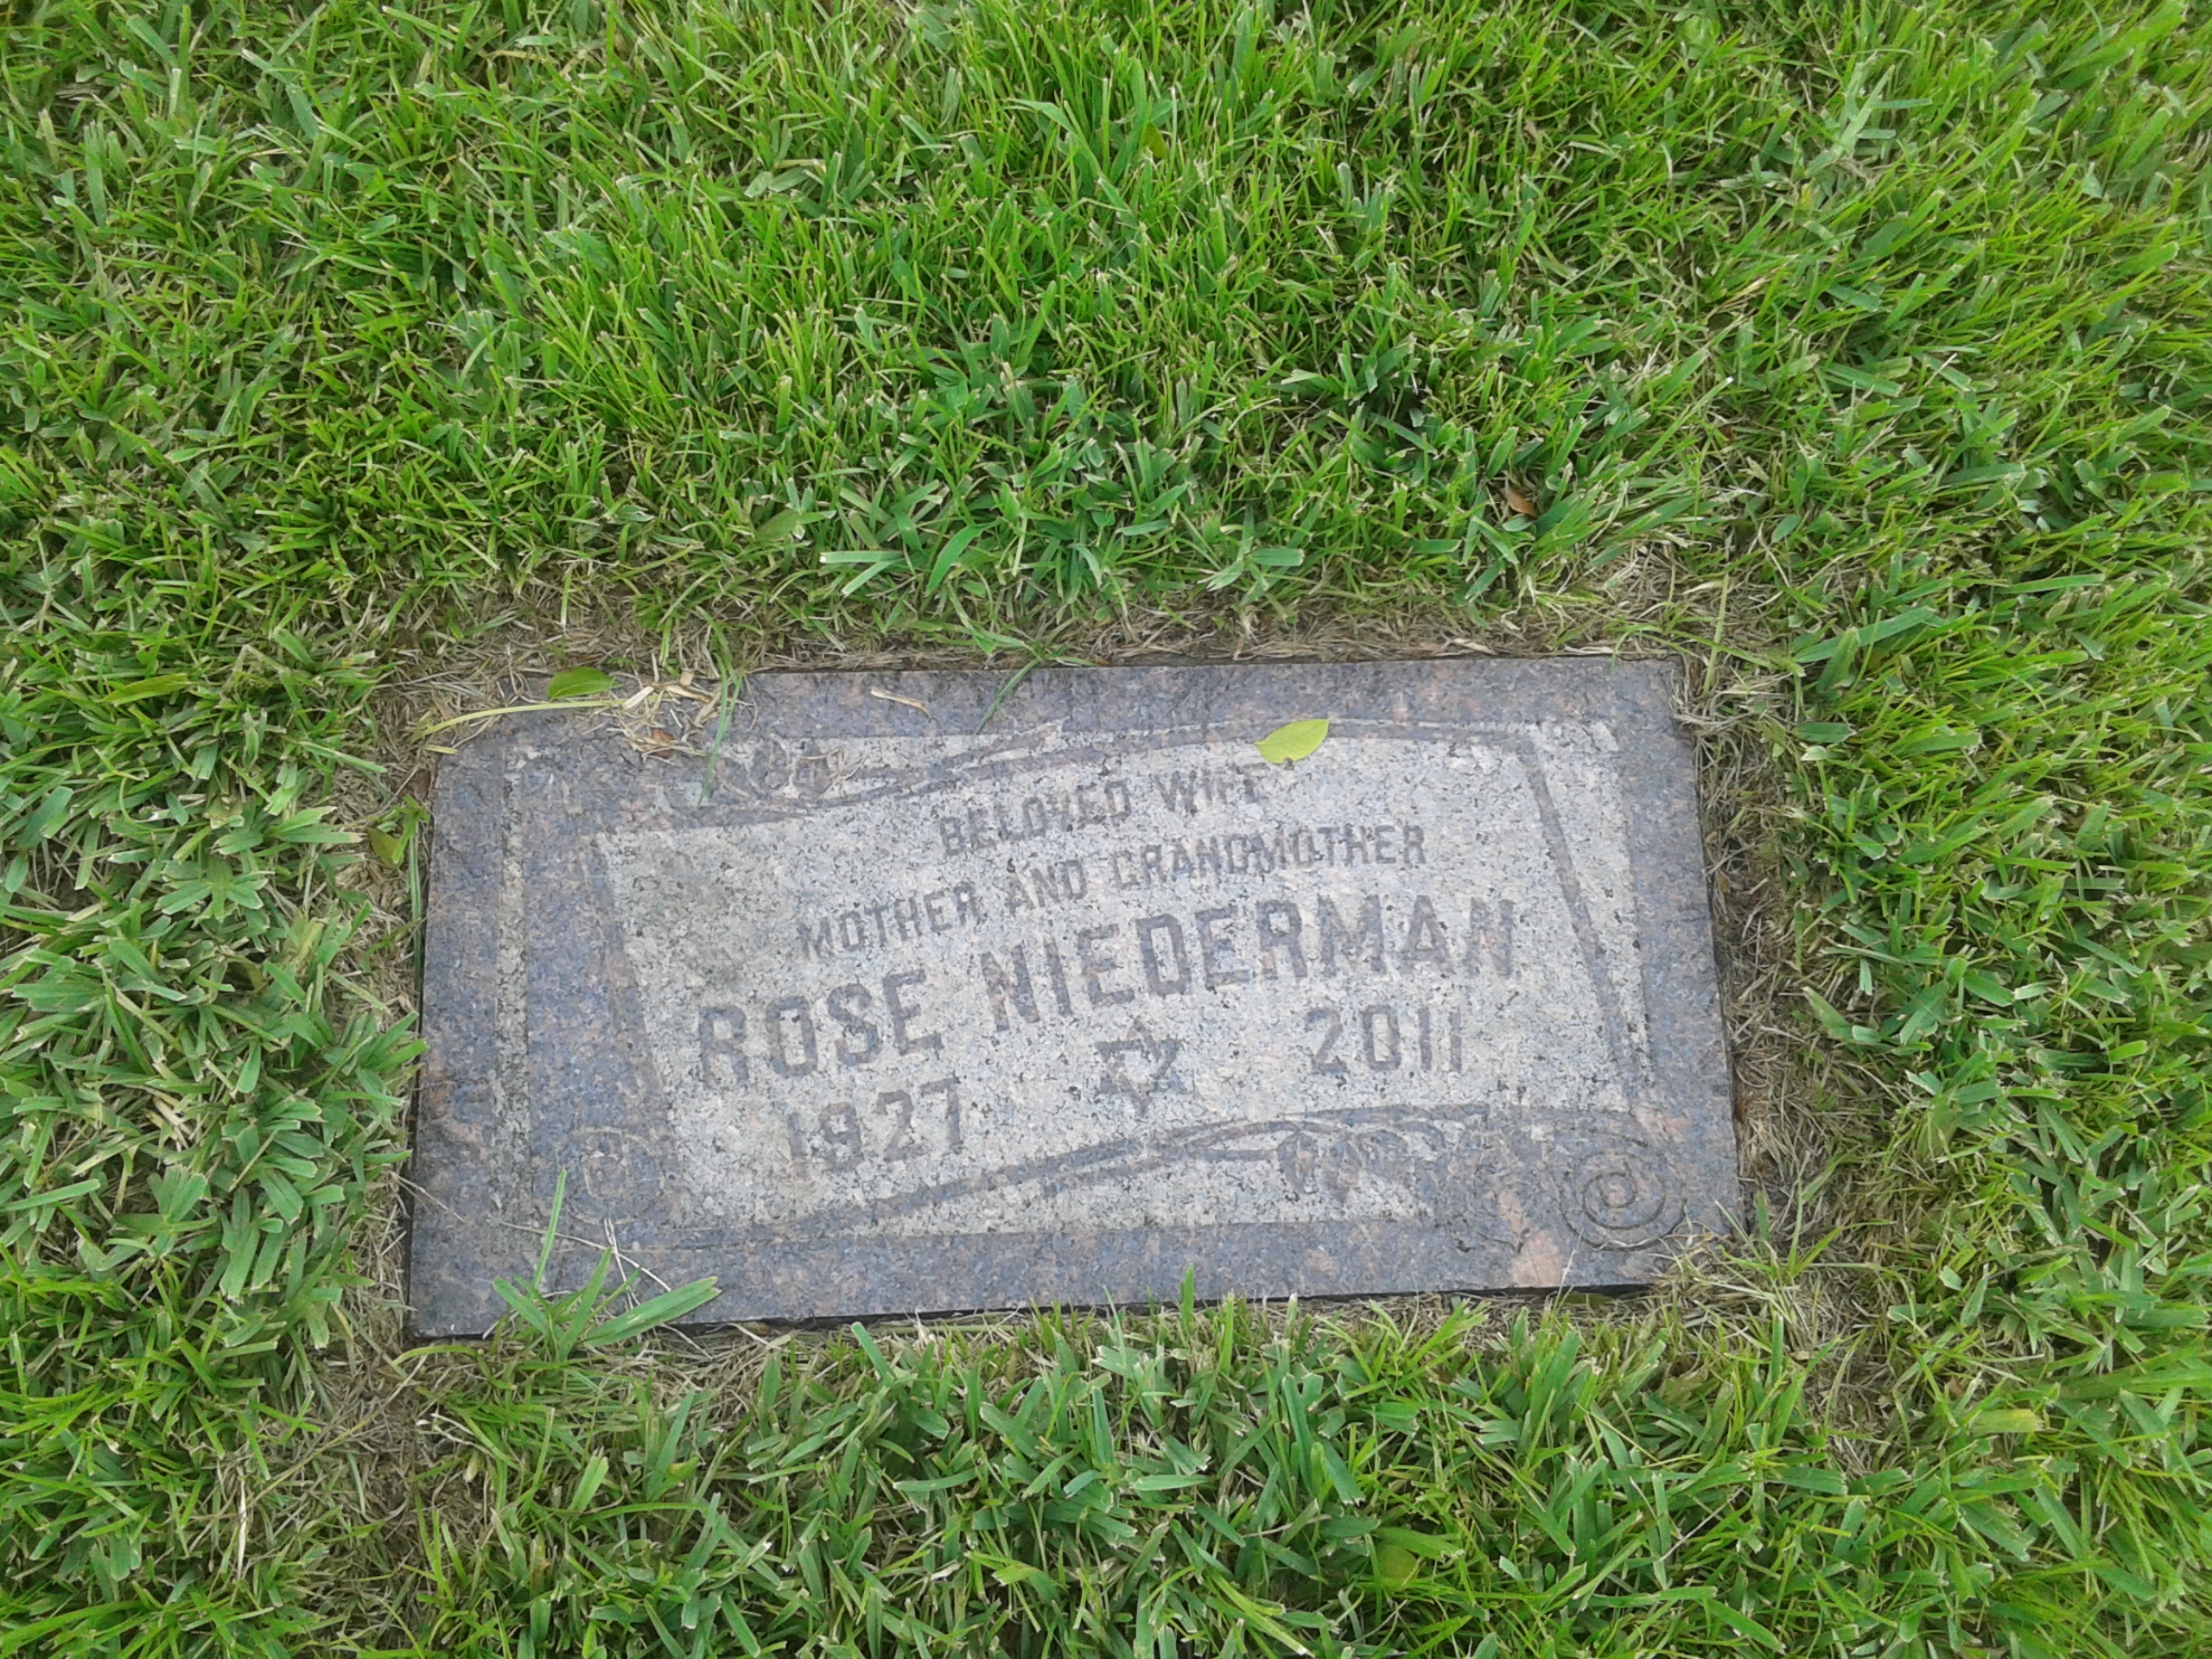 Rose Niederman